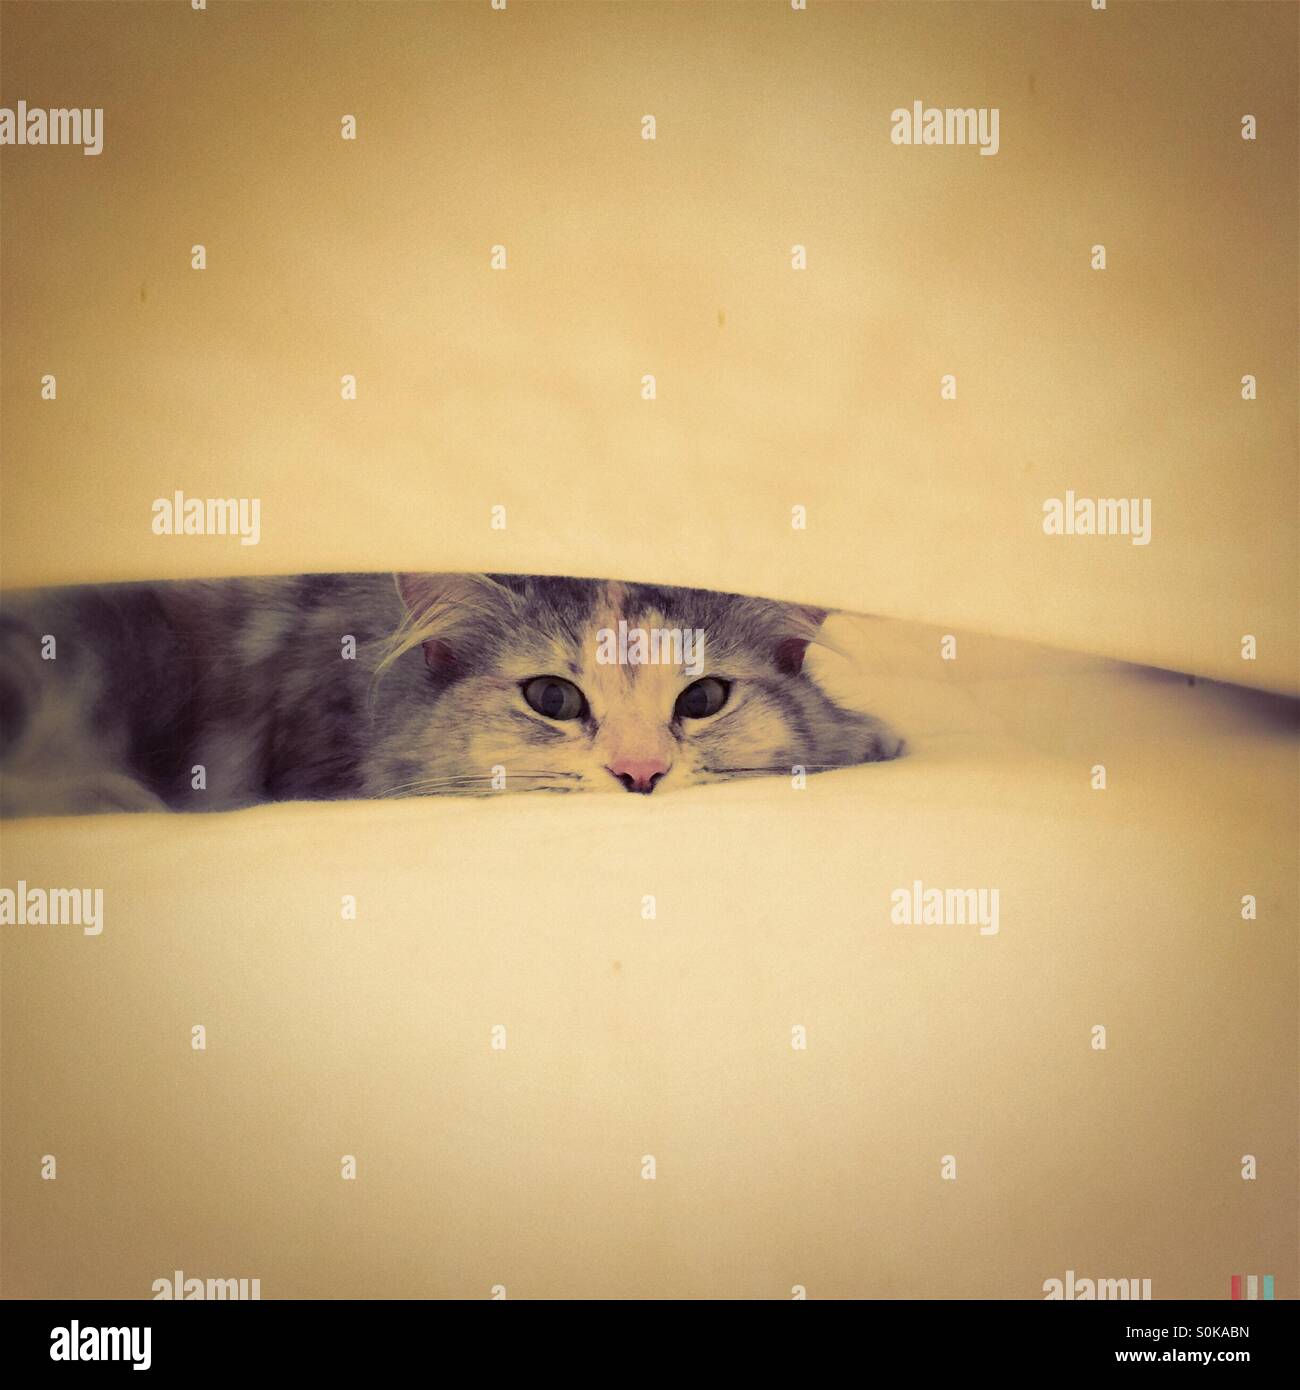 Cat hiding between a sheet and mattress Stock Photo